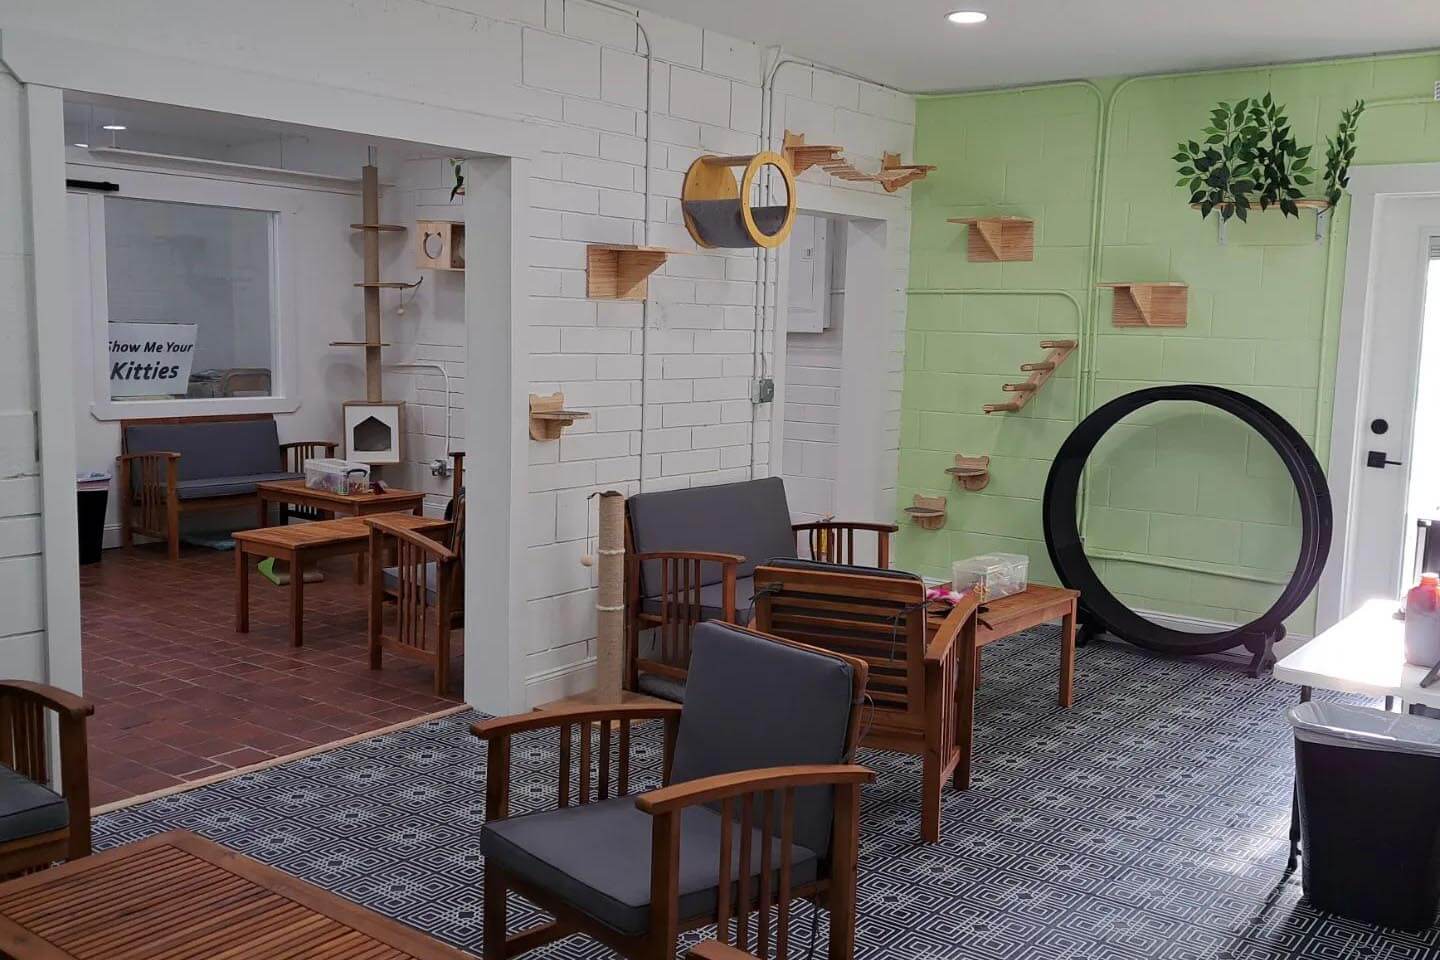 Deland Cat Cafe interior. 